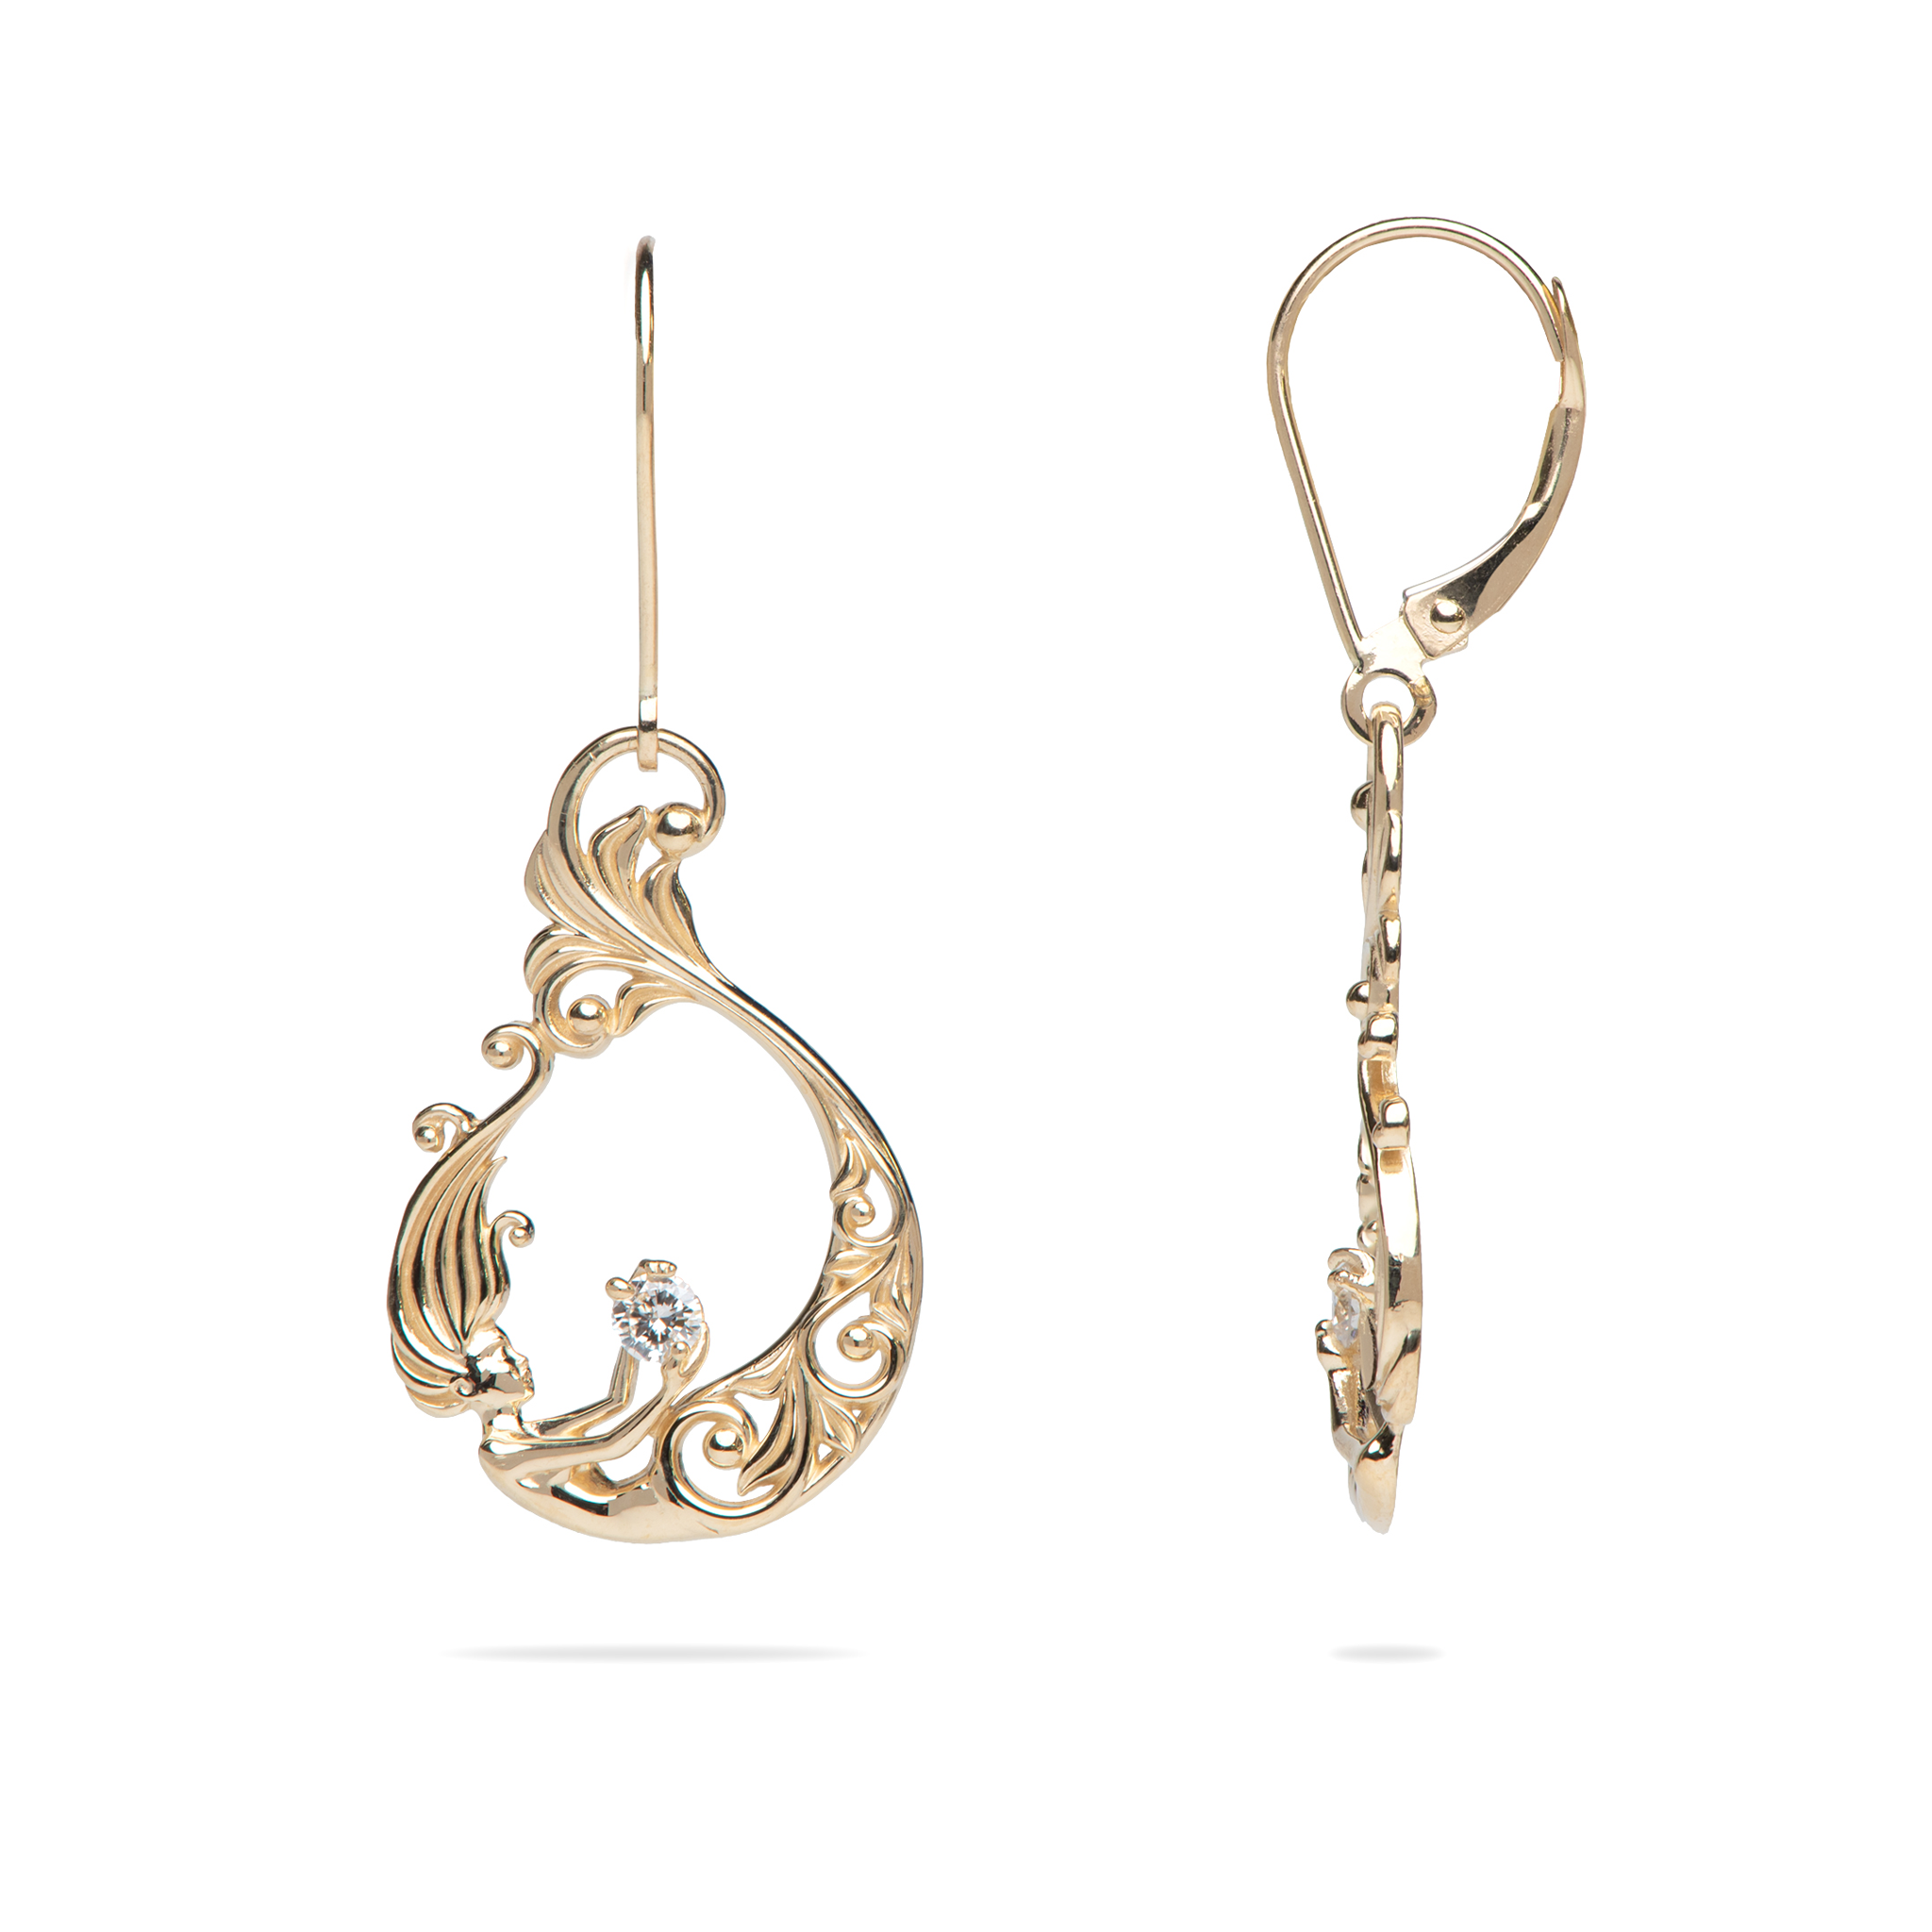 Living Heirloom Meerjungfrauen-Ohrringe in Gold mit Diamanten – 25 mm